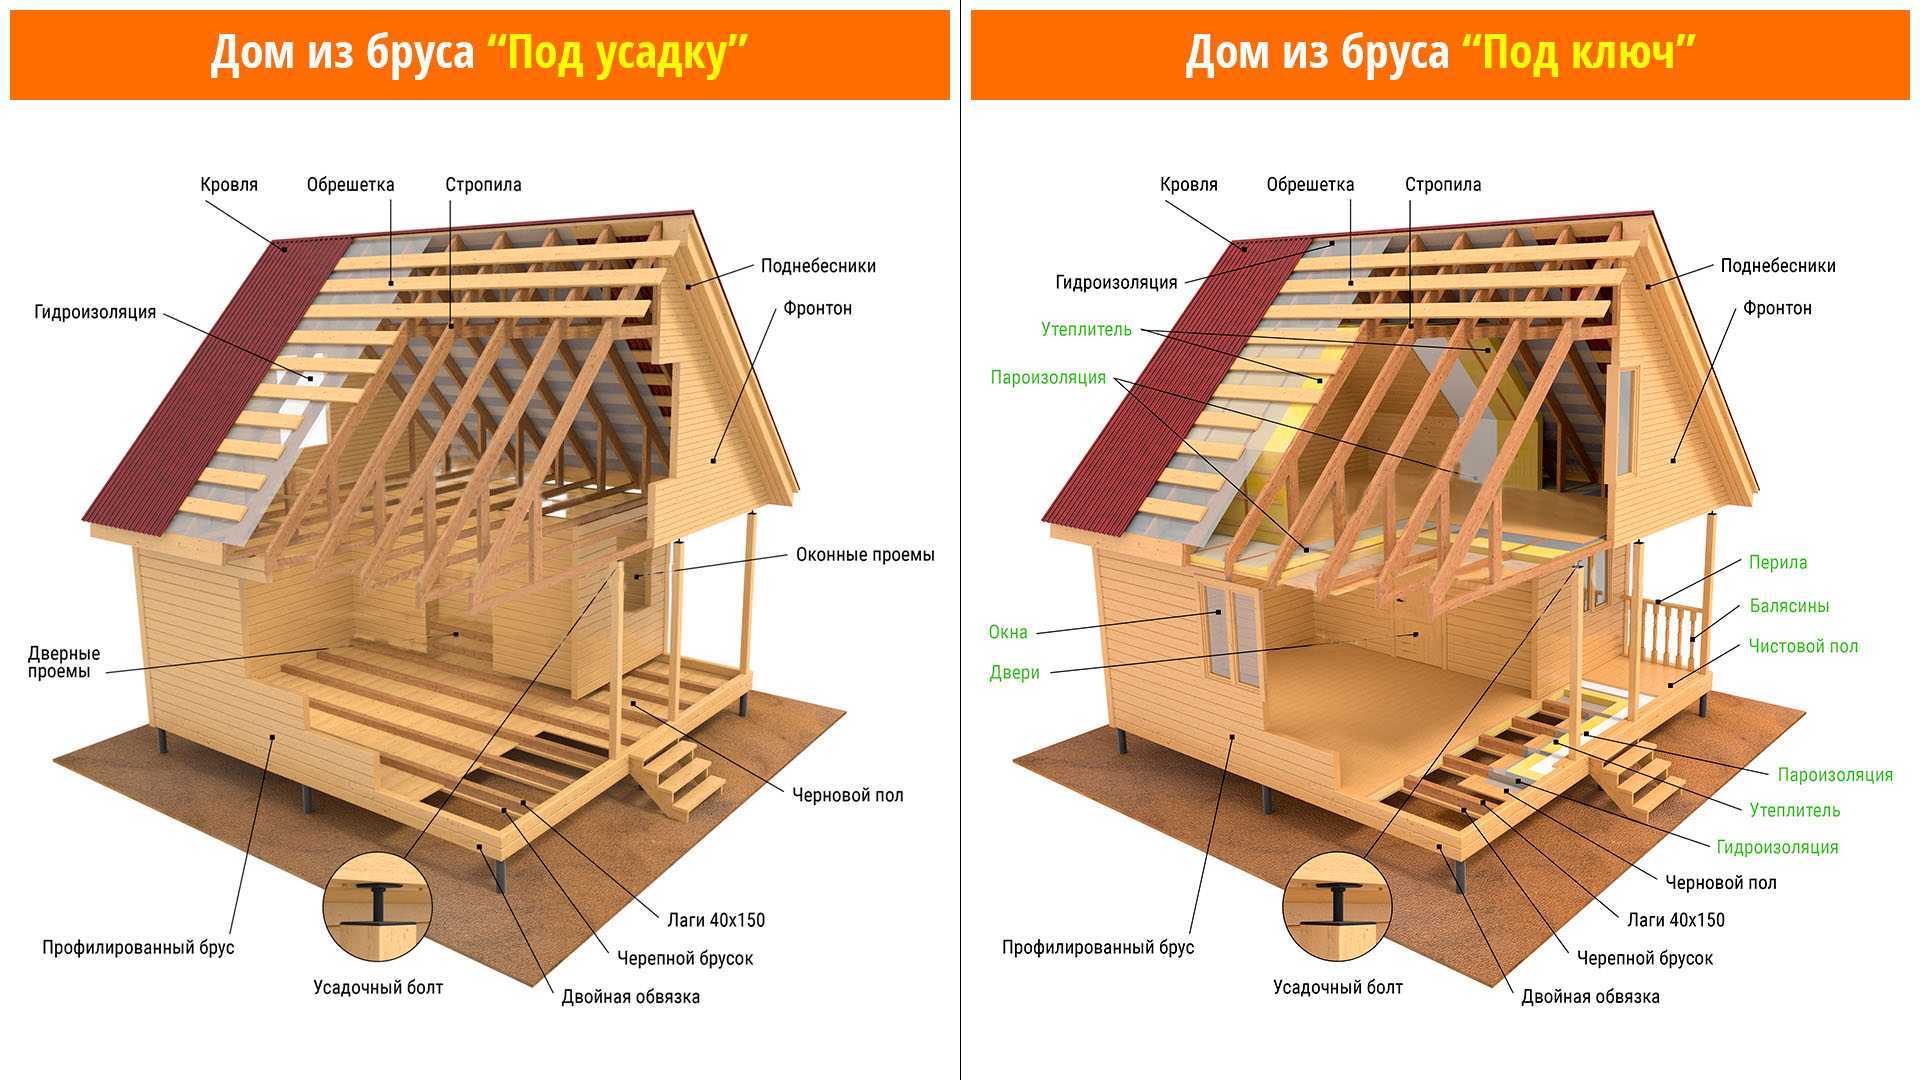 Установка деревянной двери в деревянном доме: как установить металлическую и железную модели, как правильно поставить